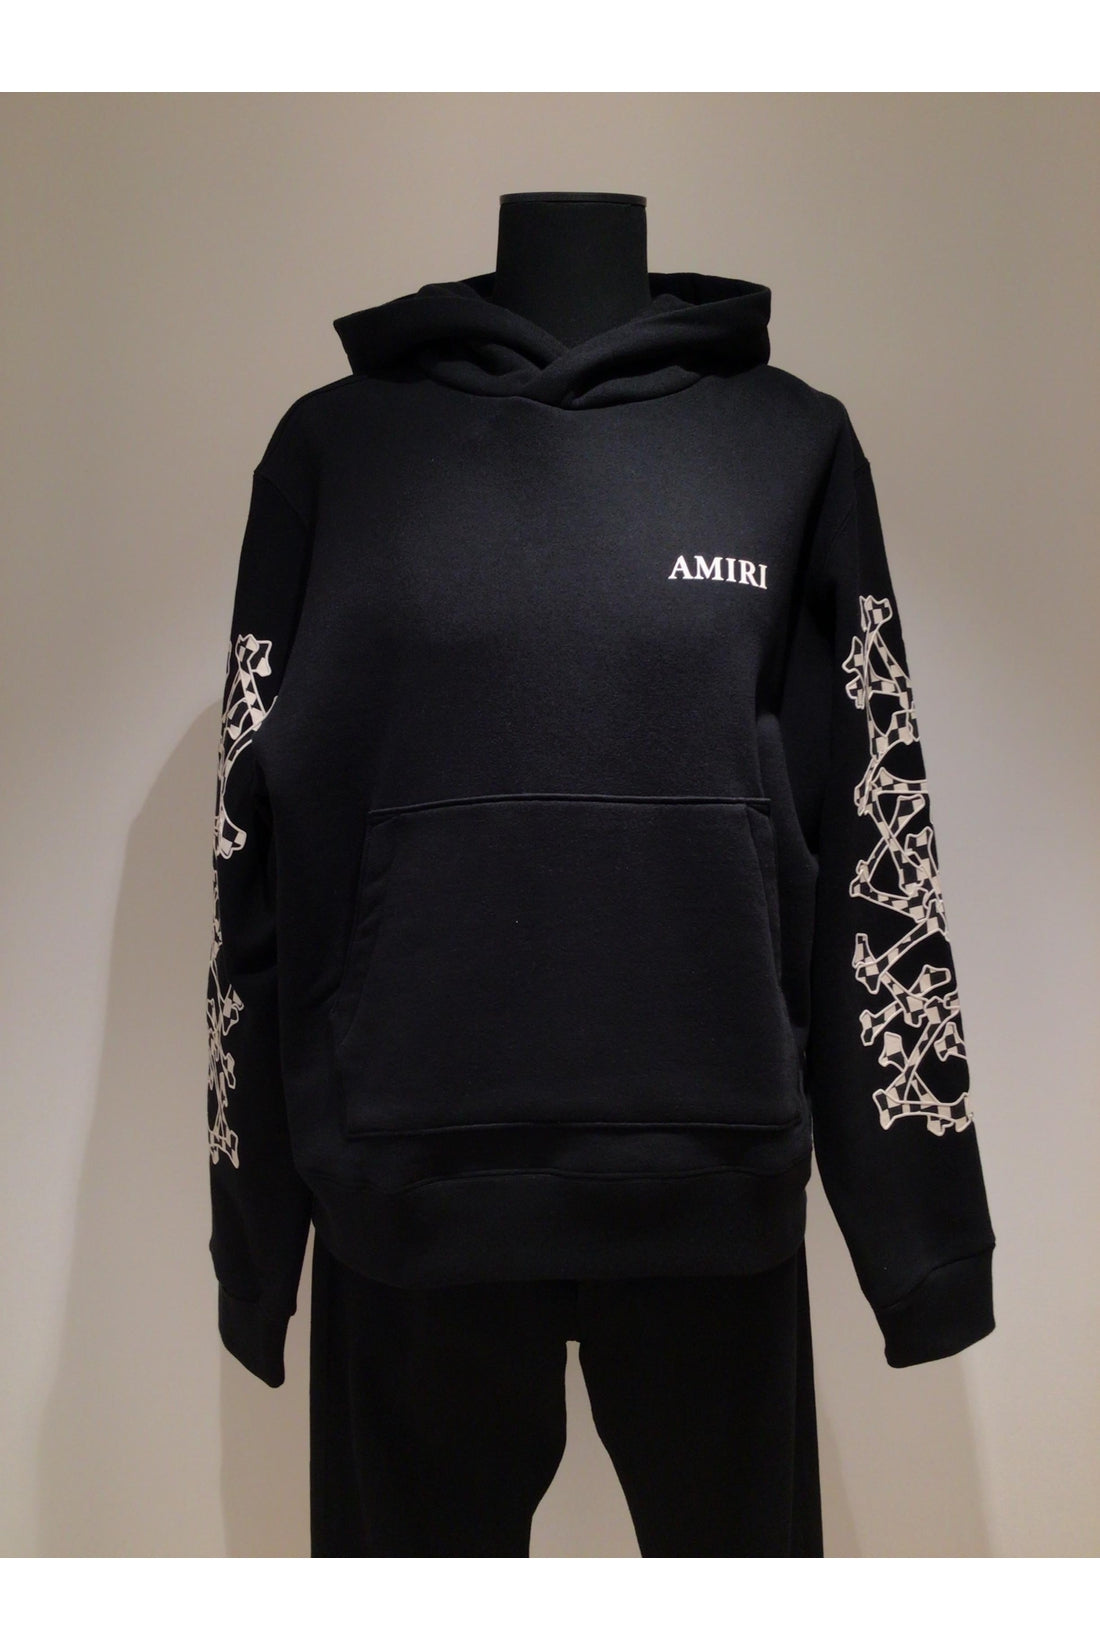 AMIRI-OUTLET-SALE-Cotton hoodie-ARCHIVIST